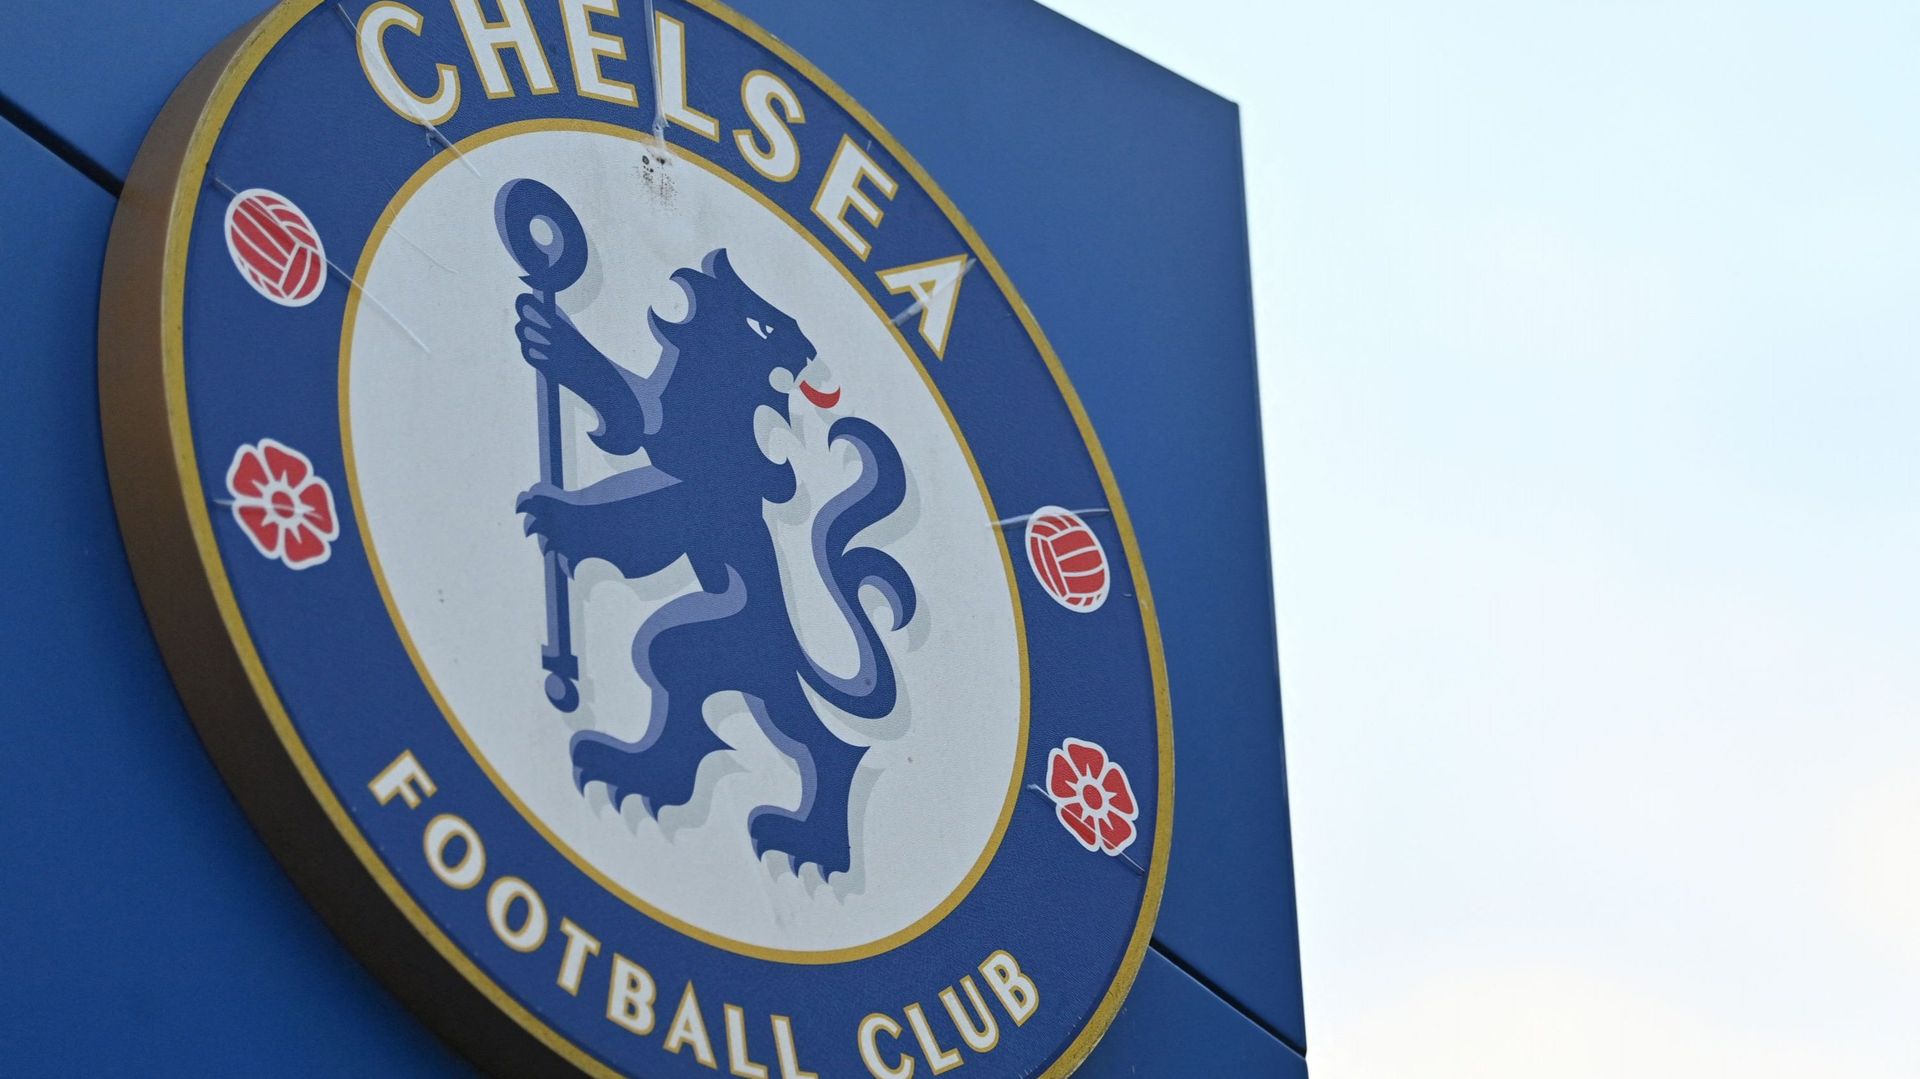 L’opérateur téléphonique britannique Three a annoncé jeudi la suspension de son partenariat avec le club de Chelsea, touché par les sanctions frappant son propriétaire russe Roman Abramovitch en raison de l’invasion russe en Ukraine.